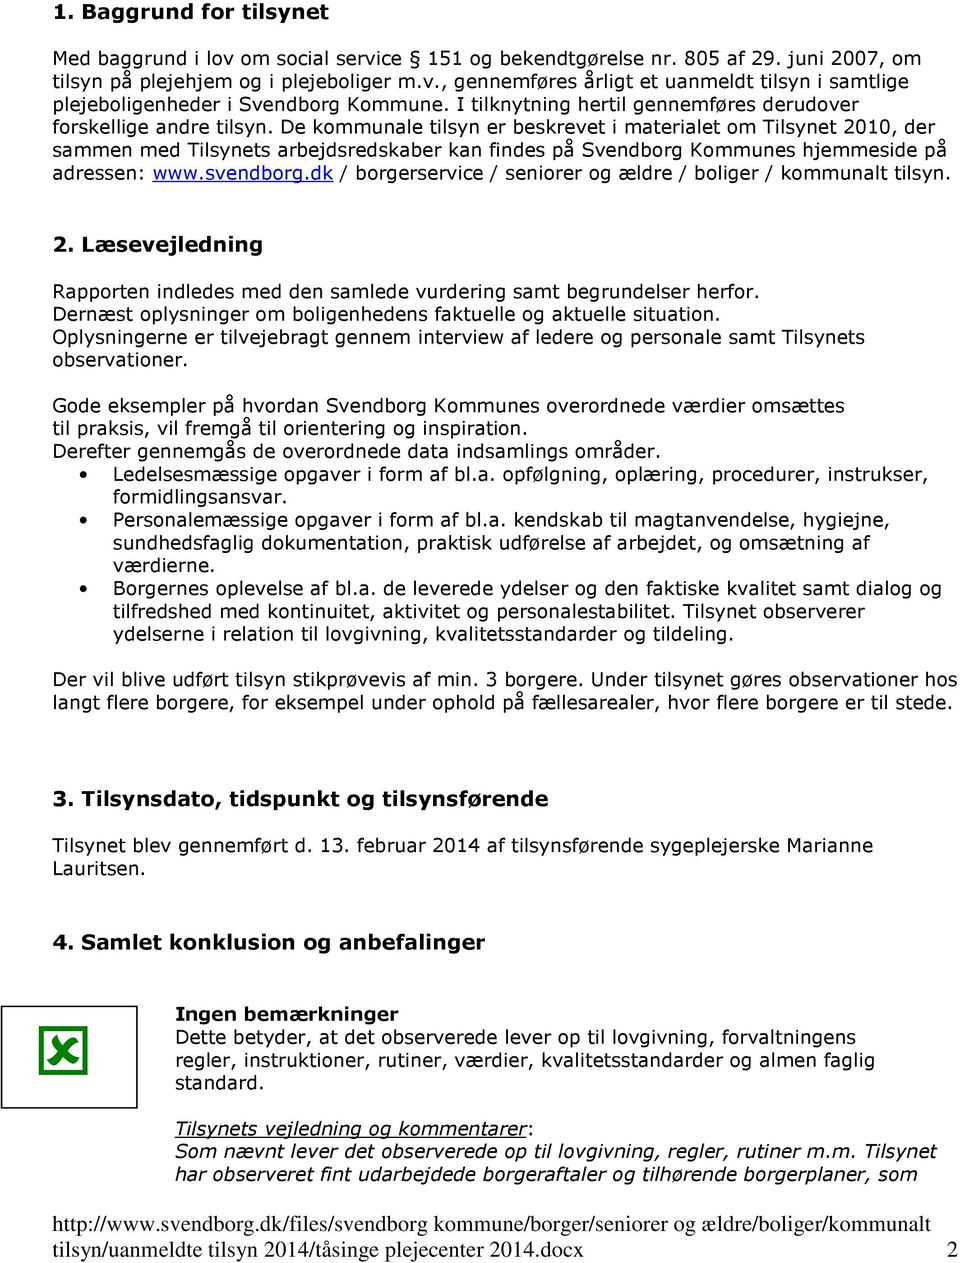 De kommunale tilsyn er beskrevet i materialet om Tilsynet 2010, der sammen med Tilsynets arbejdsredskaber kan findes på Svendborg Kommunes hjemmeside på adressen: www.svendborg.